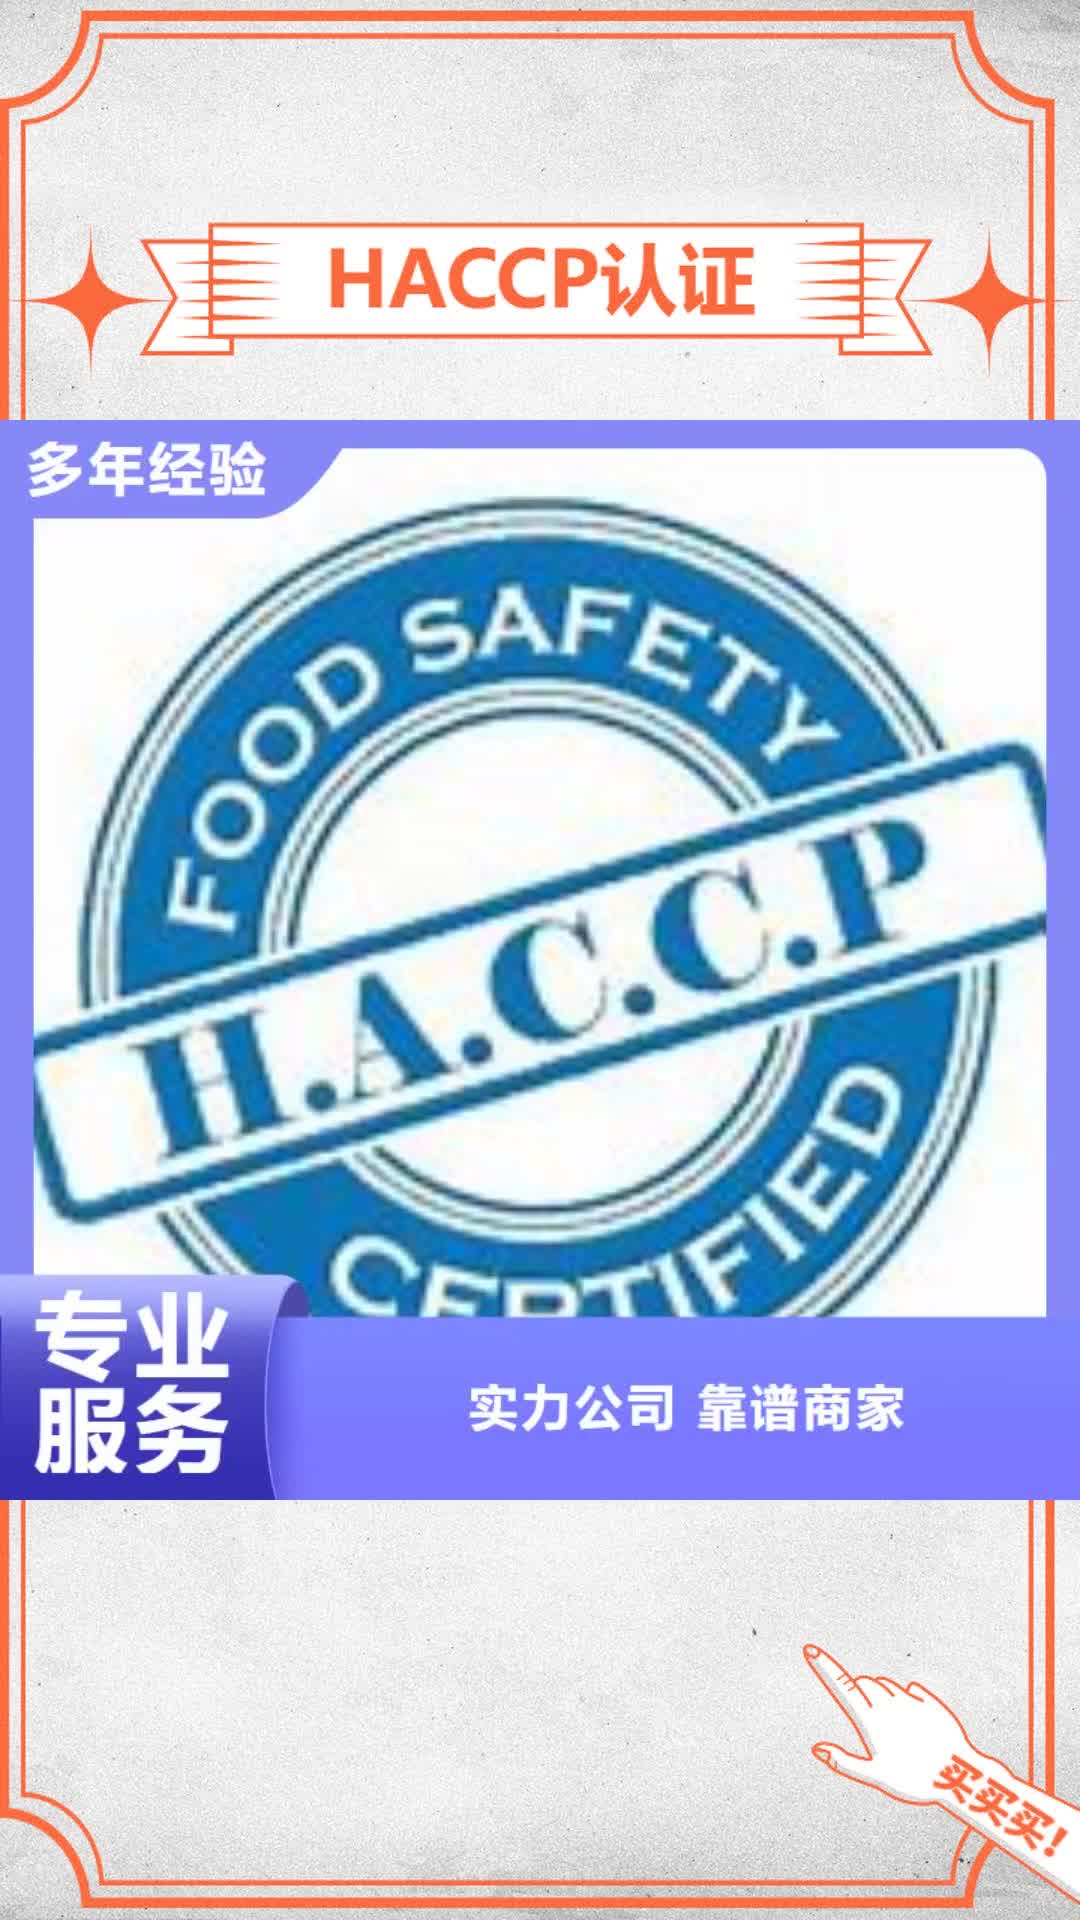 绵阳【HACCP认证】-FSC认证诚信经营